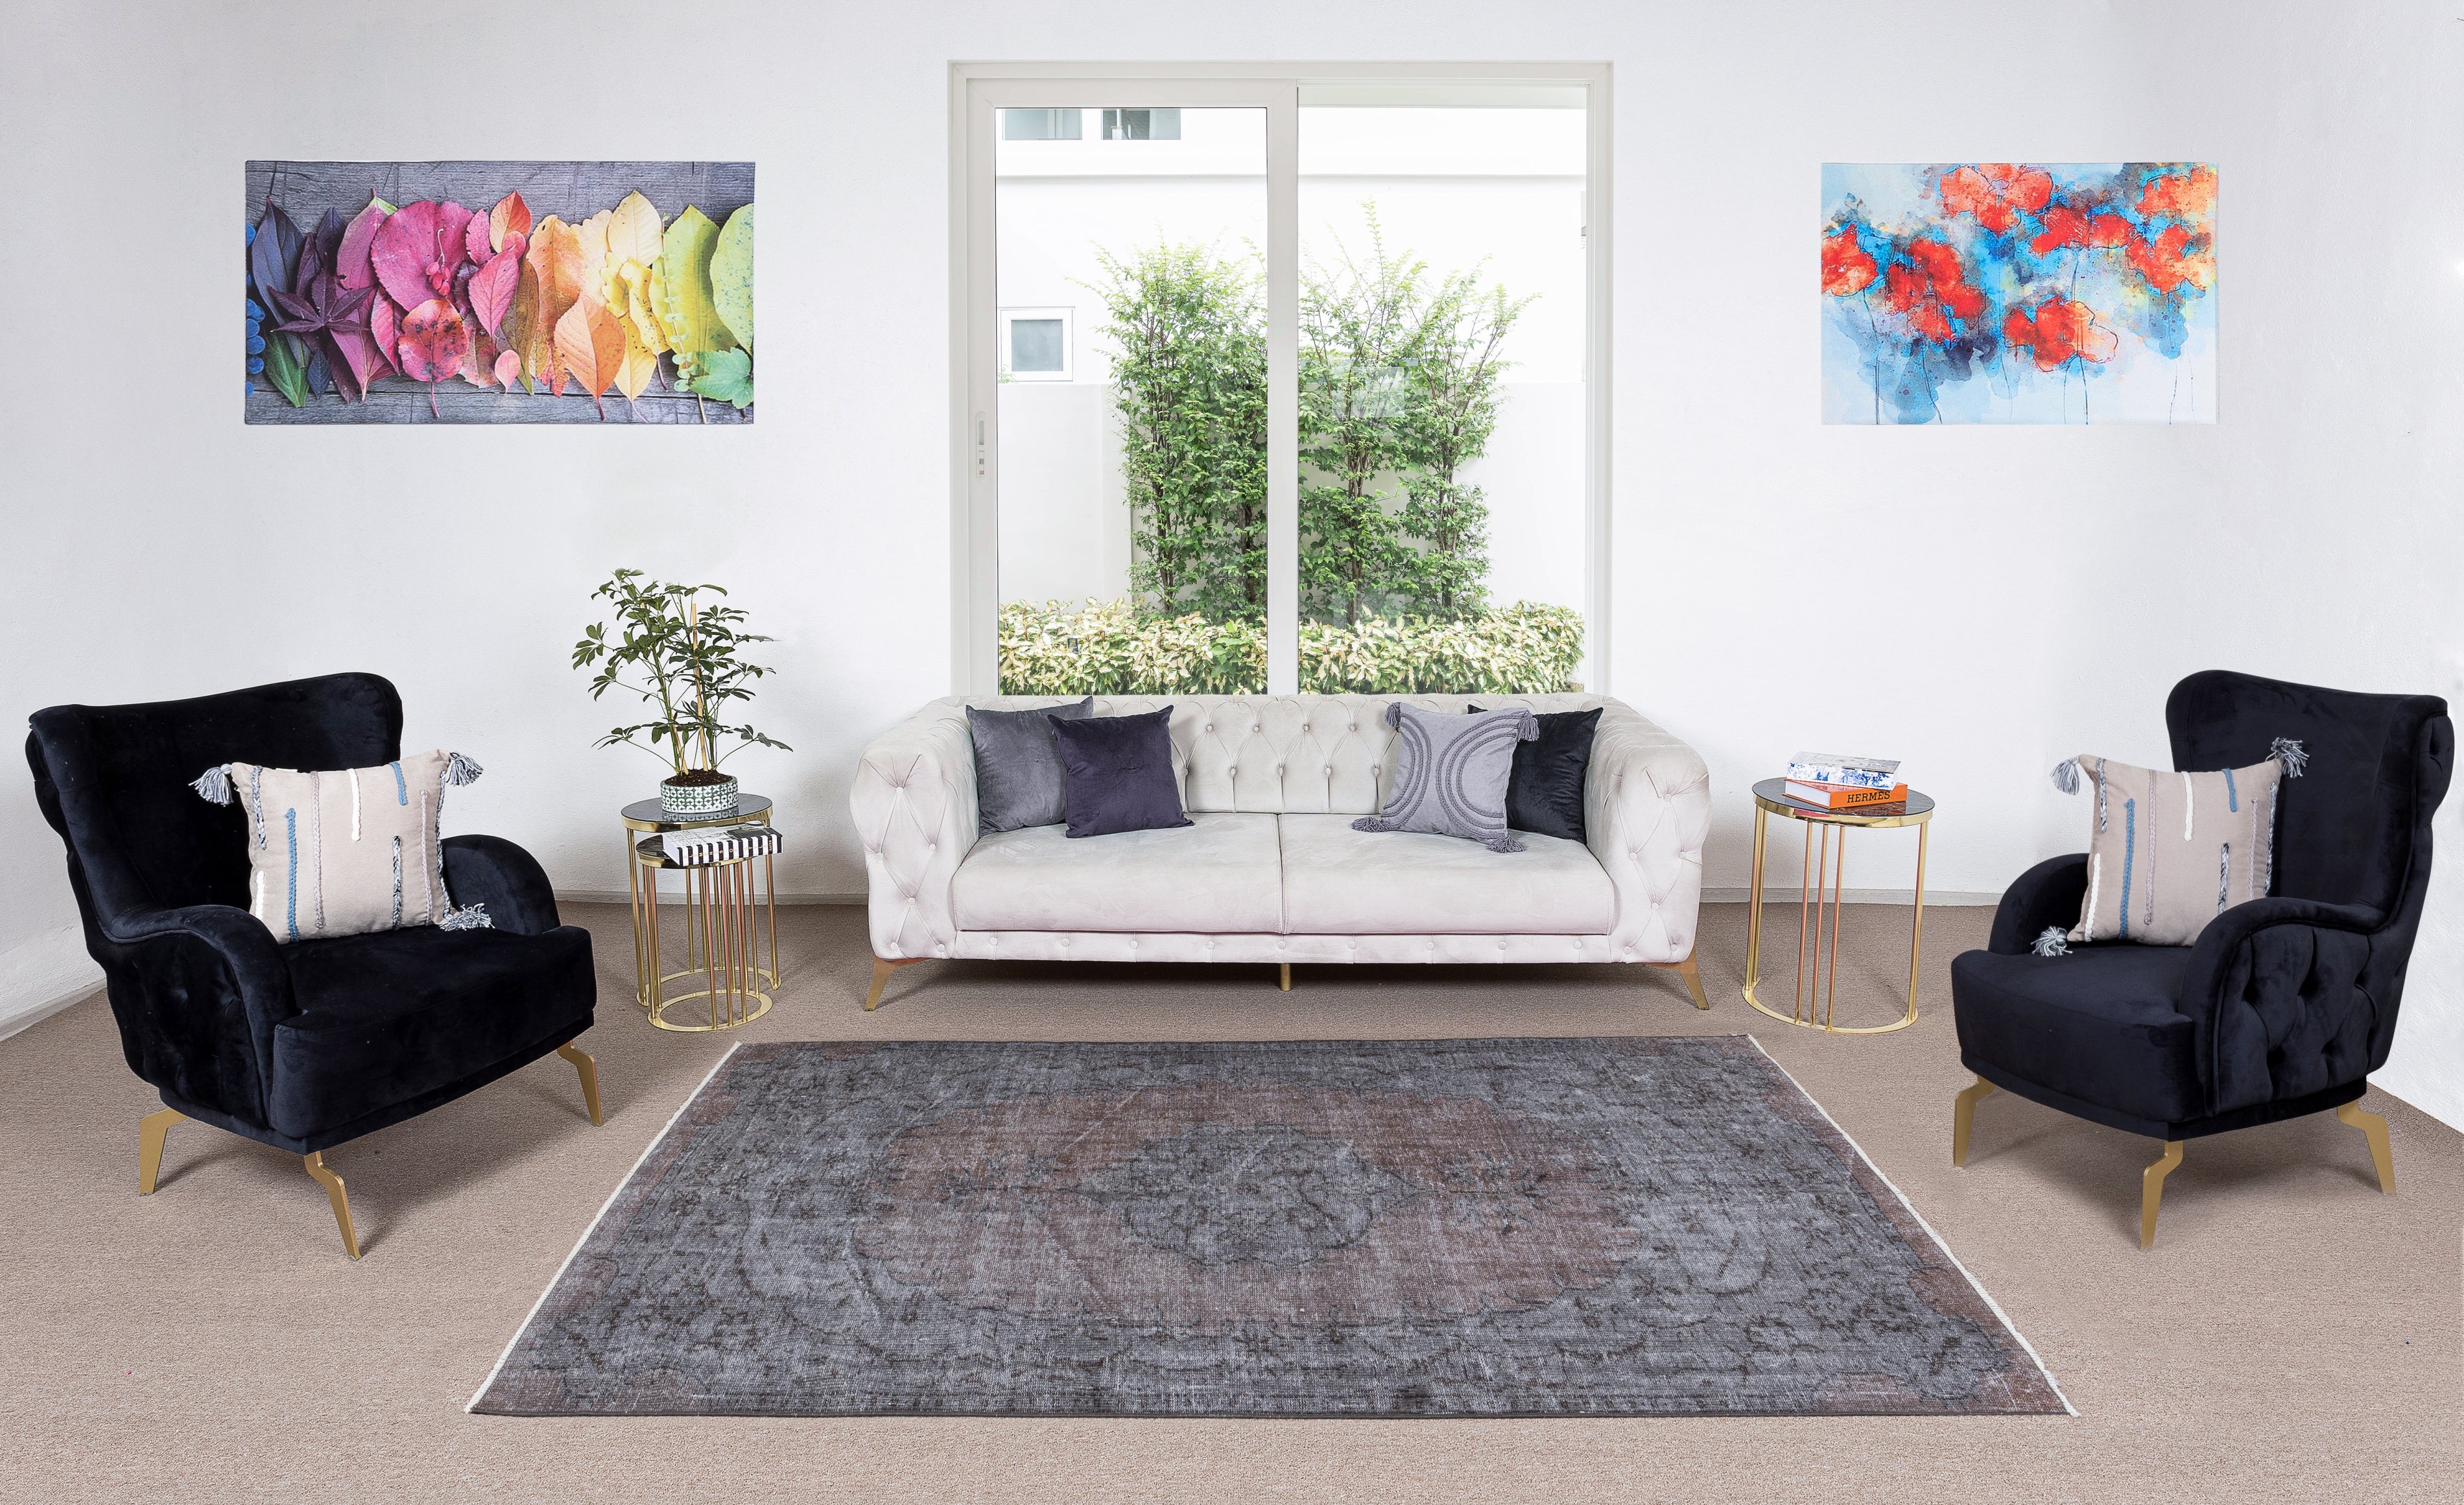 5.2x8.4 Ft Handgefertigter Türkischer Teppich in Grau & Brown. Moderner Teppich im Medaillon-Design